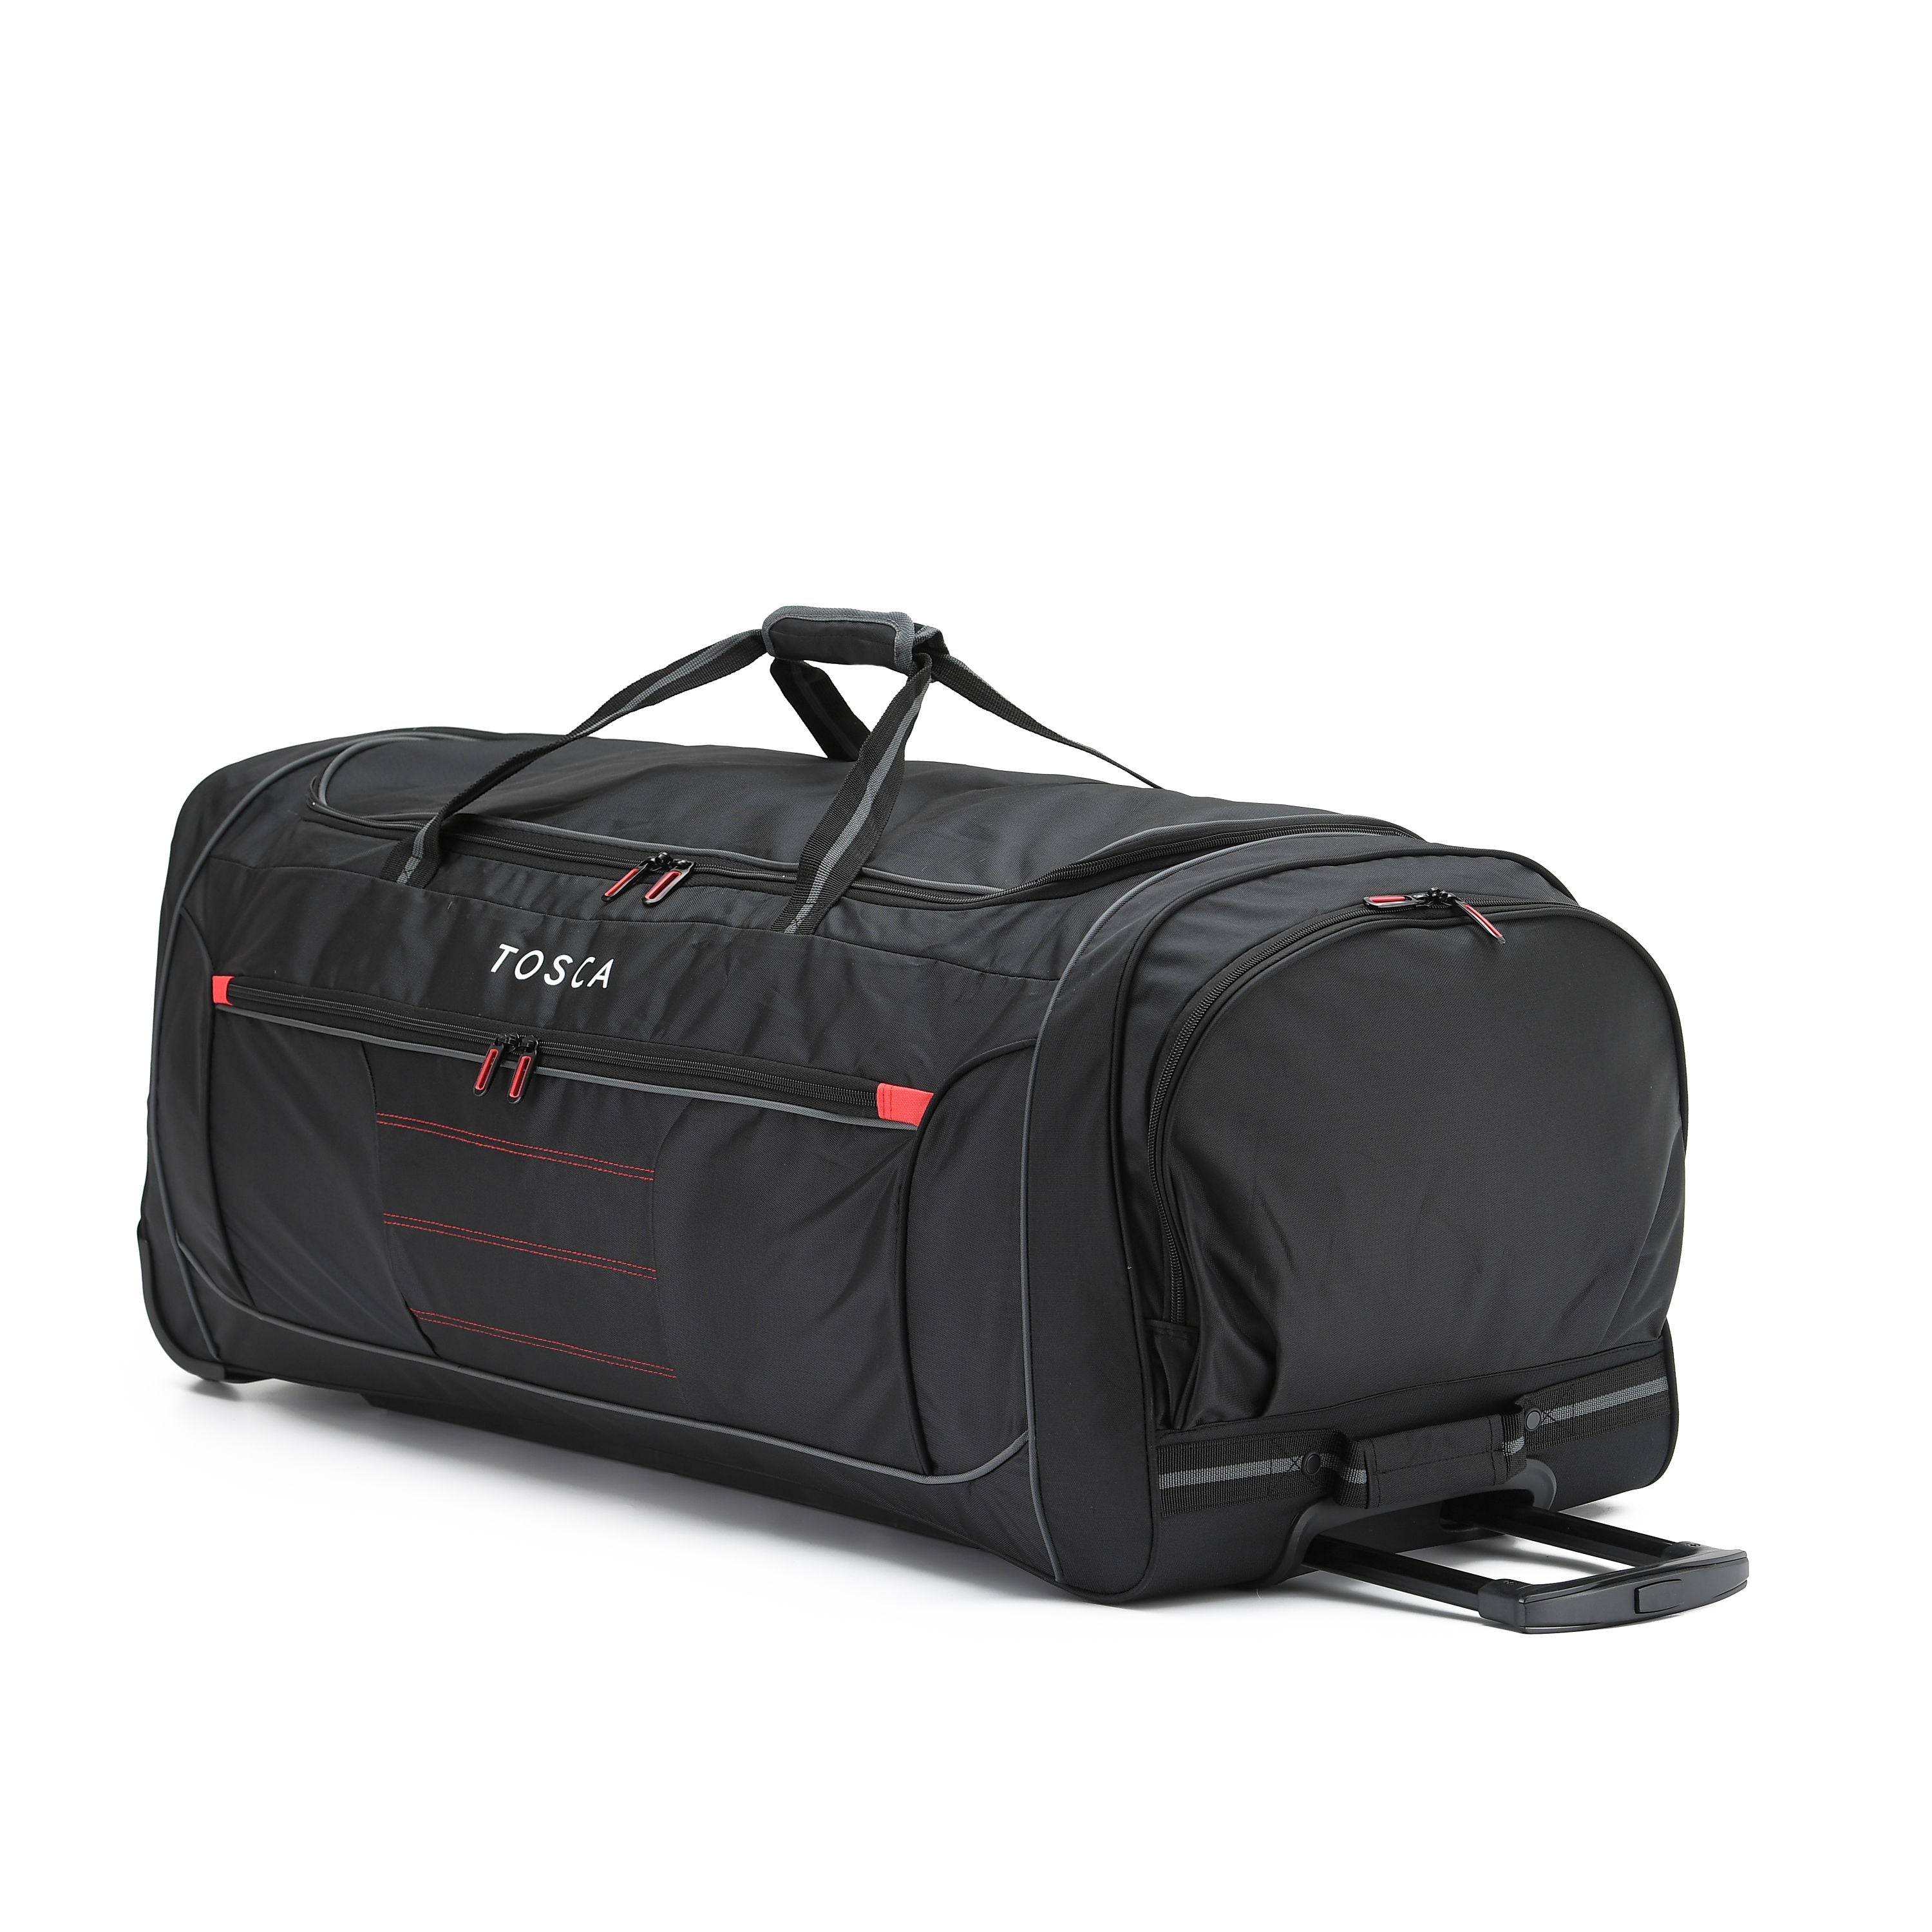 Tosca - TCA794 90cm Jumbo Wheeled Duffle Bag - Black/Red - 0